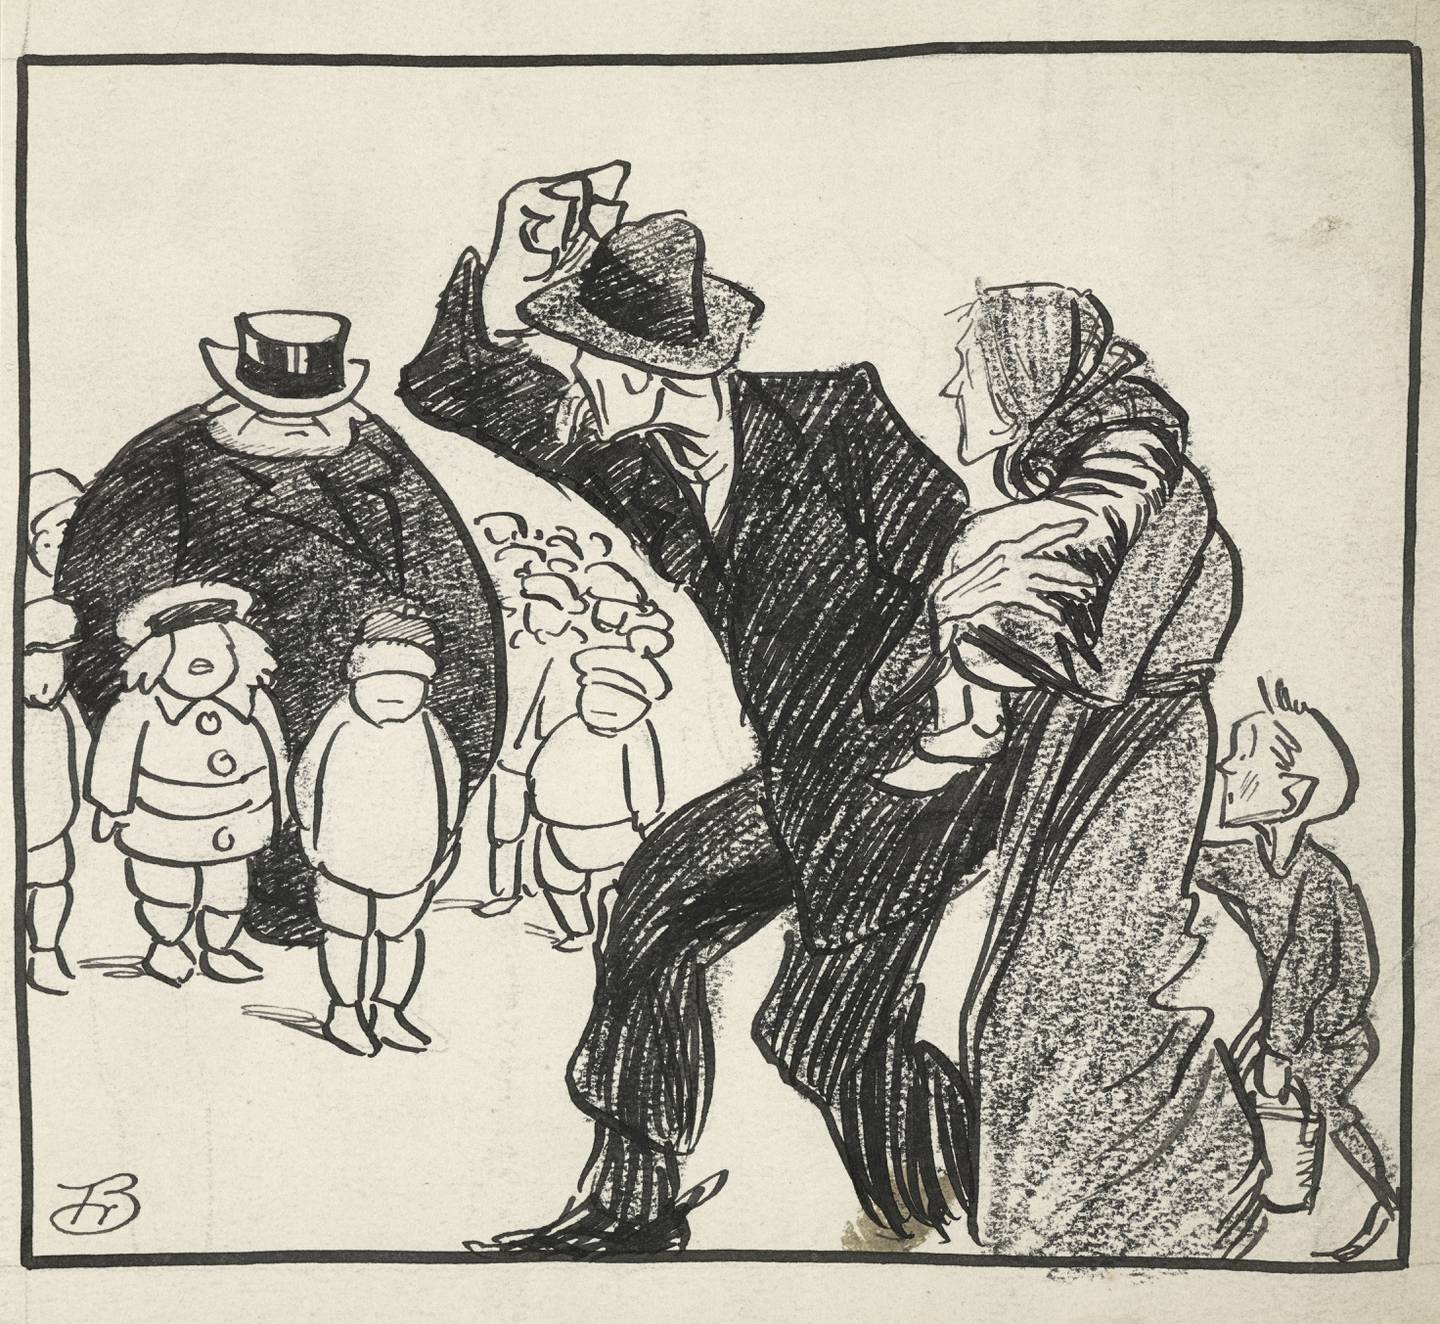 Nøden var stor i Kristianias forsteder i Aker kommune. Karikatur viser den store forskjellen mellom fattig og rik. Tegning av Fredrik Christian Bødtker.